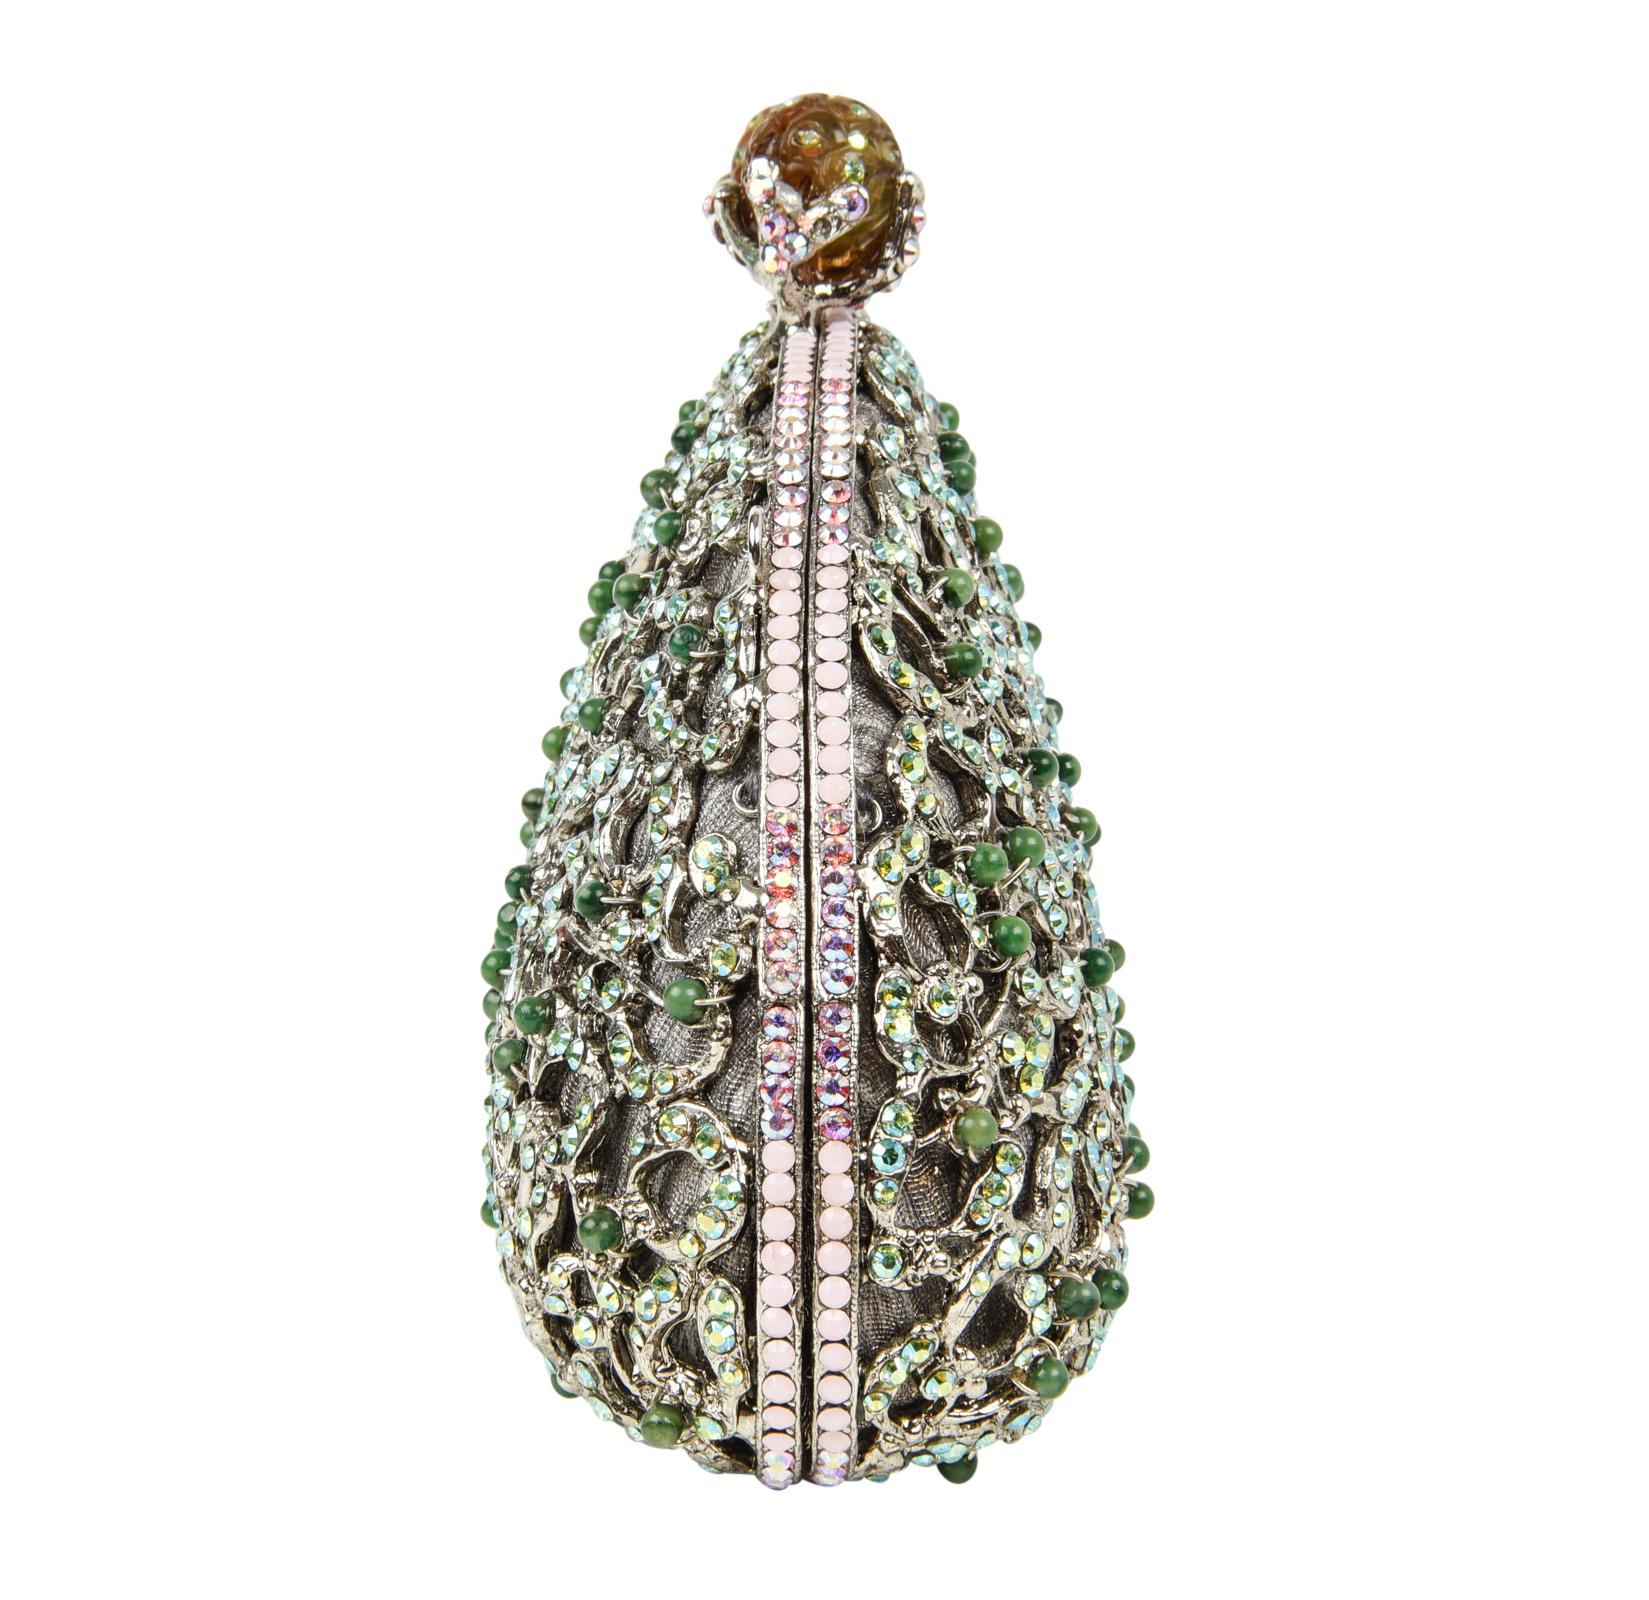 Women's Edidi Bag Exquisite Swarovksi Diamante Jade Accented Evening Purse  NWT